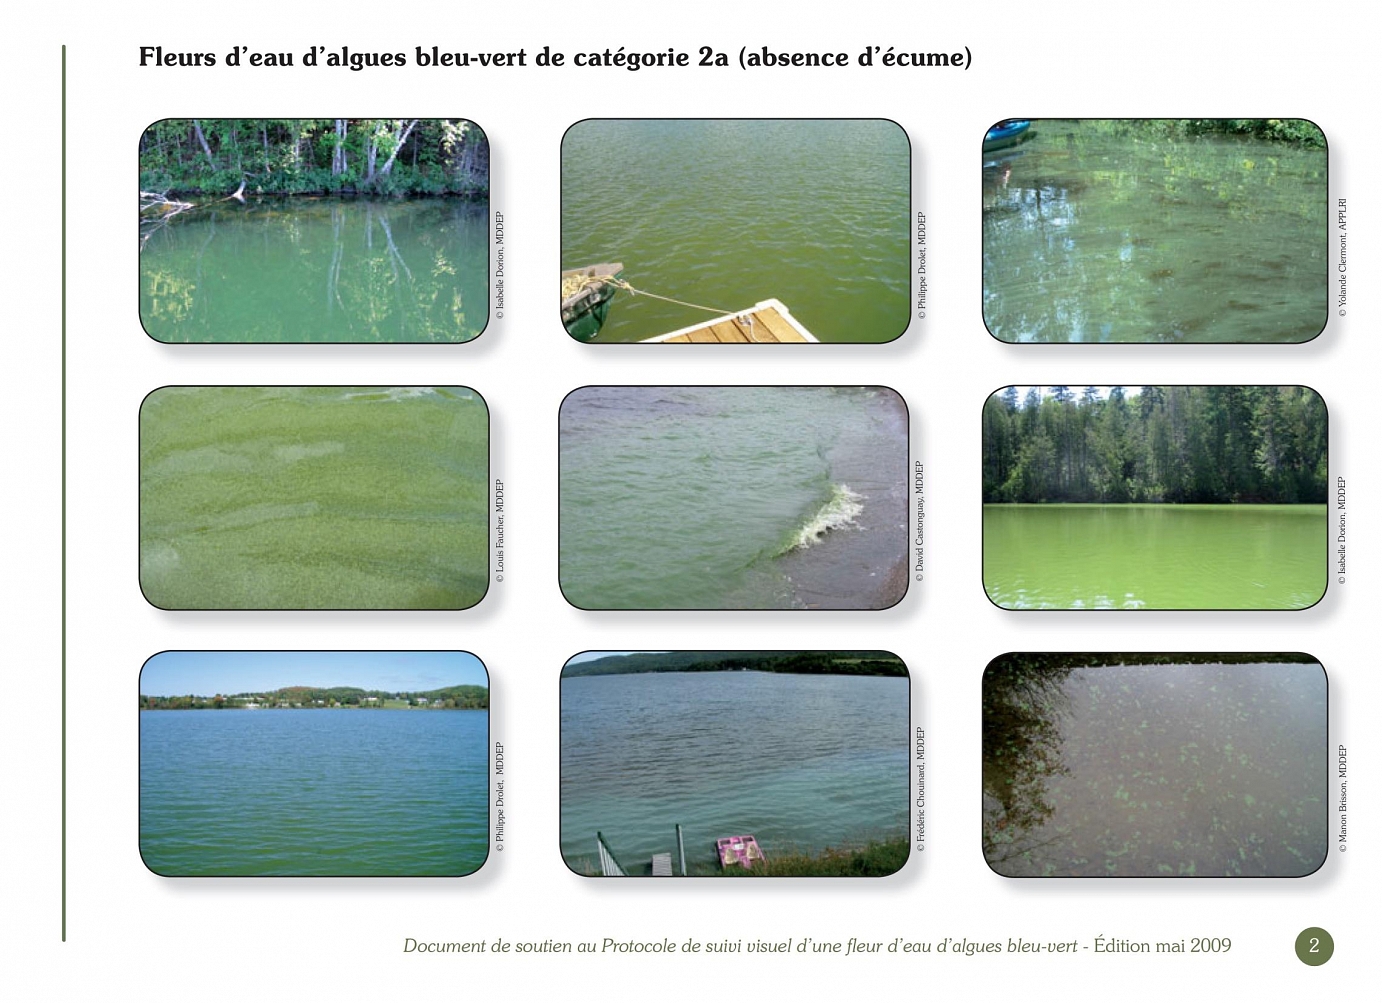 Ministère du Développement durable, de l’Environnement et des Parcs, Conseil régional de l’environnement des Laurentides, Document de soutien au Protocole de suivi visuel d’une fleur d’eau d’algues bleu-vert, Juillet 2008 (2e édition – mai 2009).